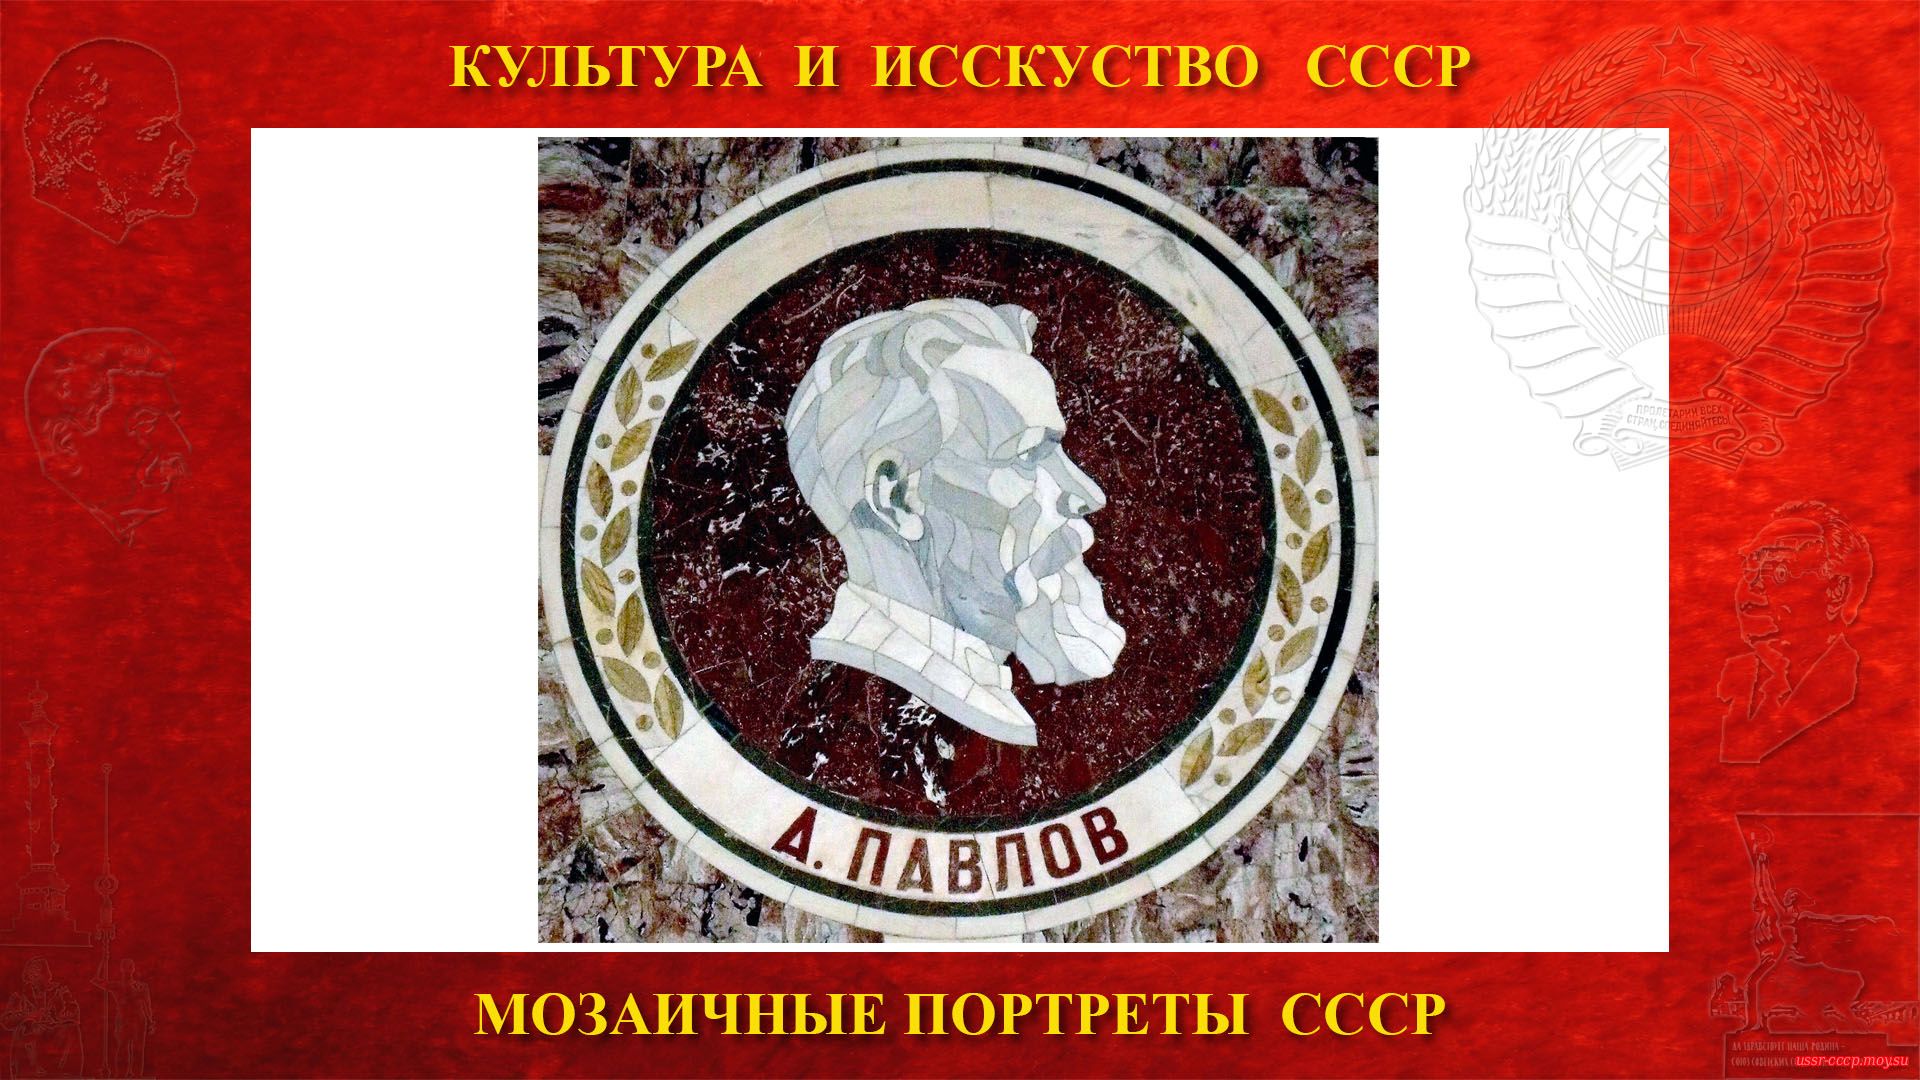 Мозаичный портрет Павлову А.П. на Ленинских горах в ГЗ МГУ (Москва 1953) (повествование)